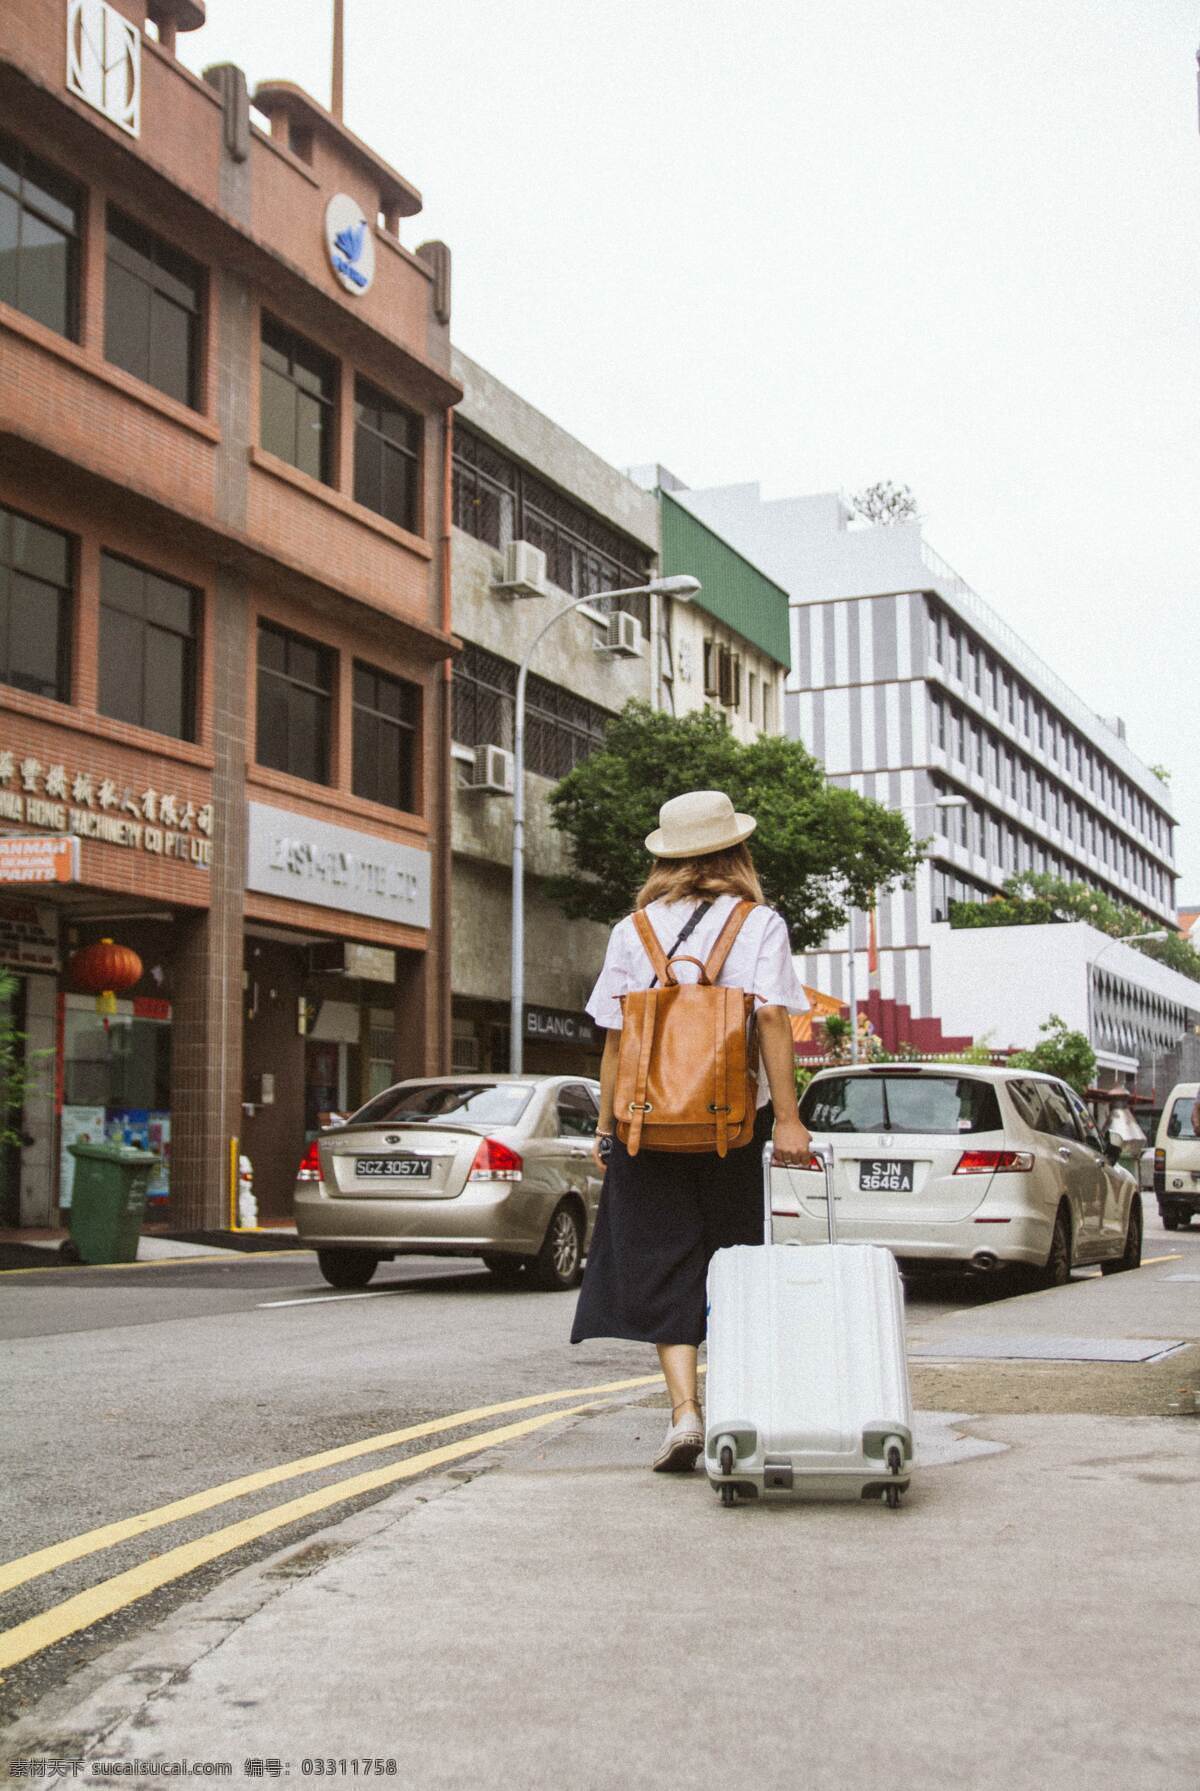 旅行者女士 旅行 女生 女士 人 背影 剪影 行李箱 背包 帽子 街头 街道 车 房子 旅游 独自 背包客 游客 游玩 人物 人物图库 女性女人